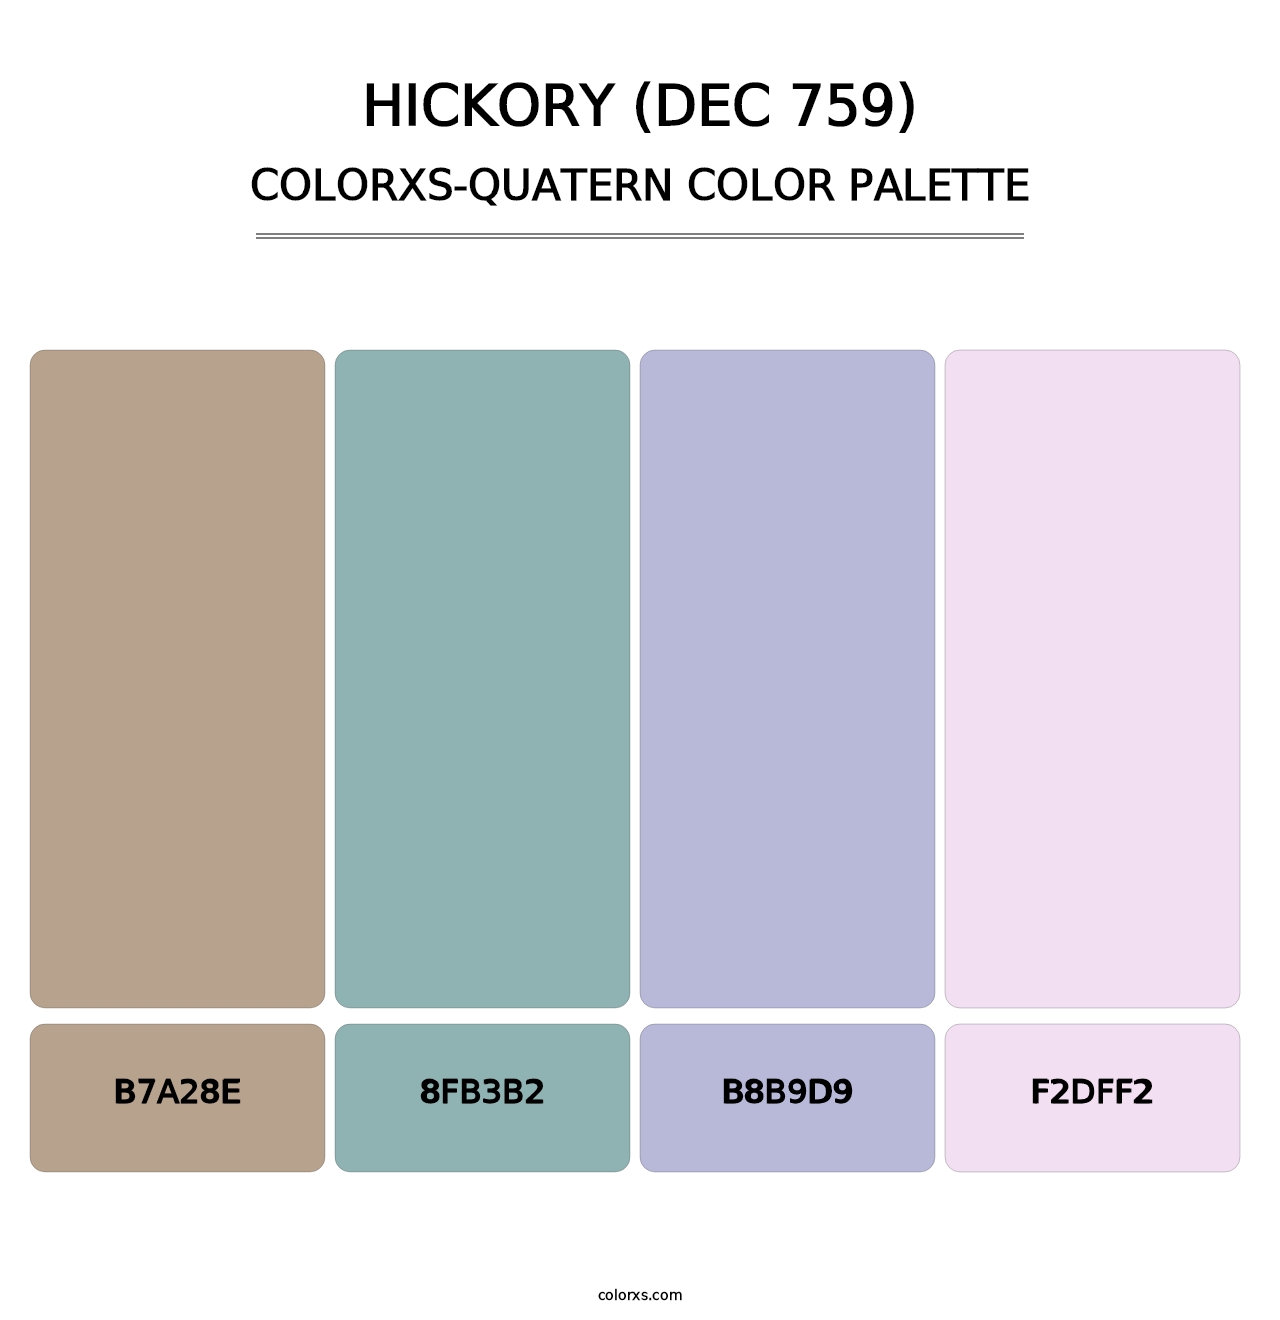 Hickory (DEC 759) - Colorxs Quatern Palette